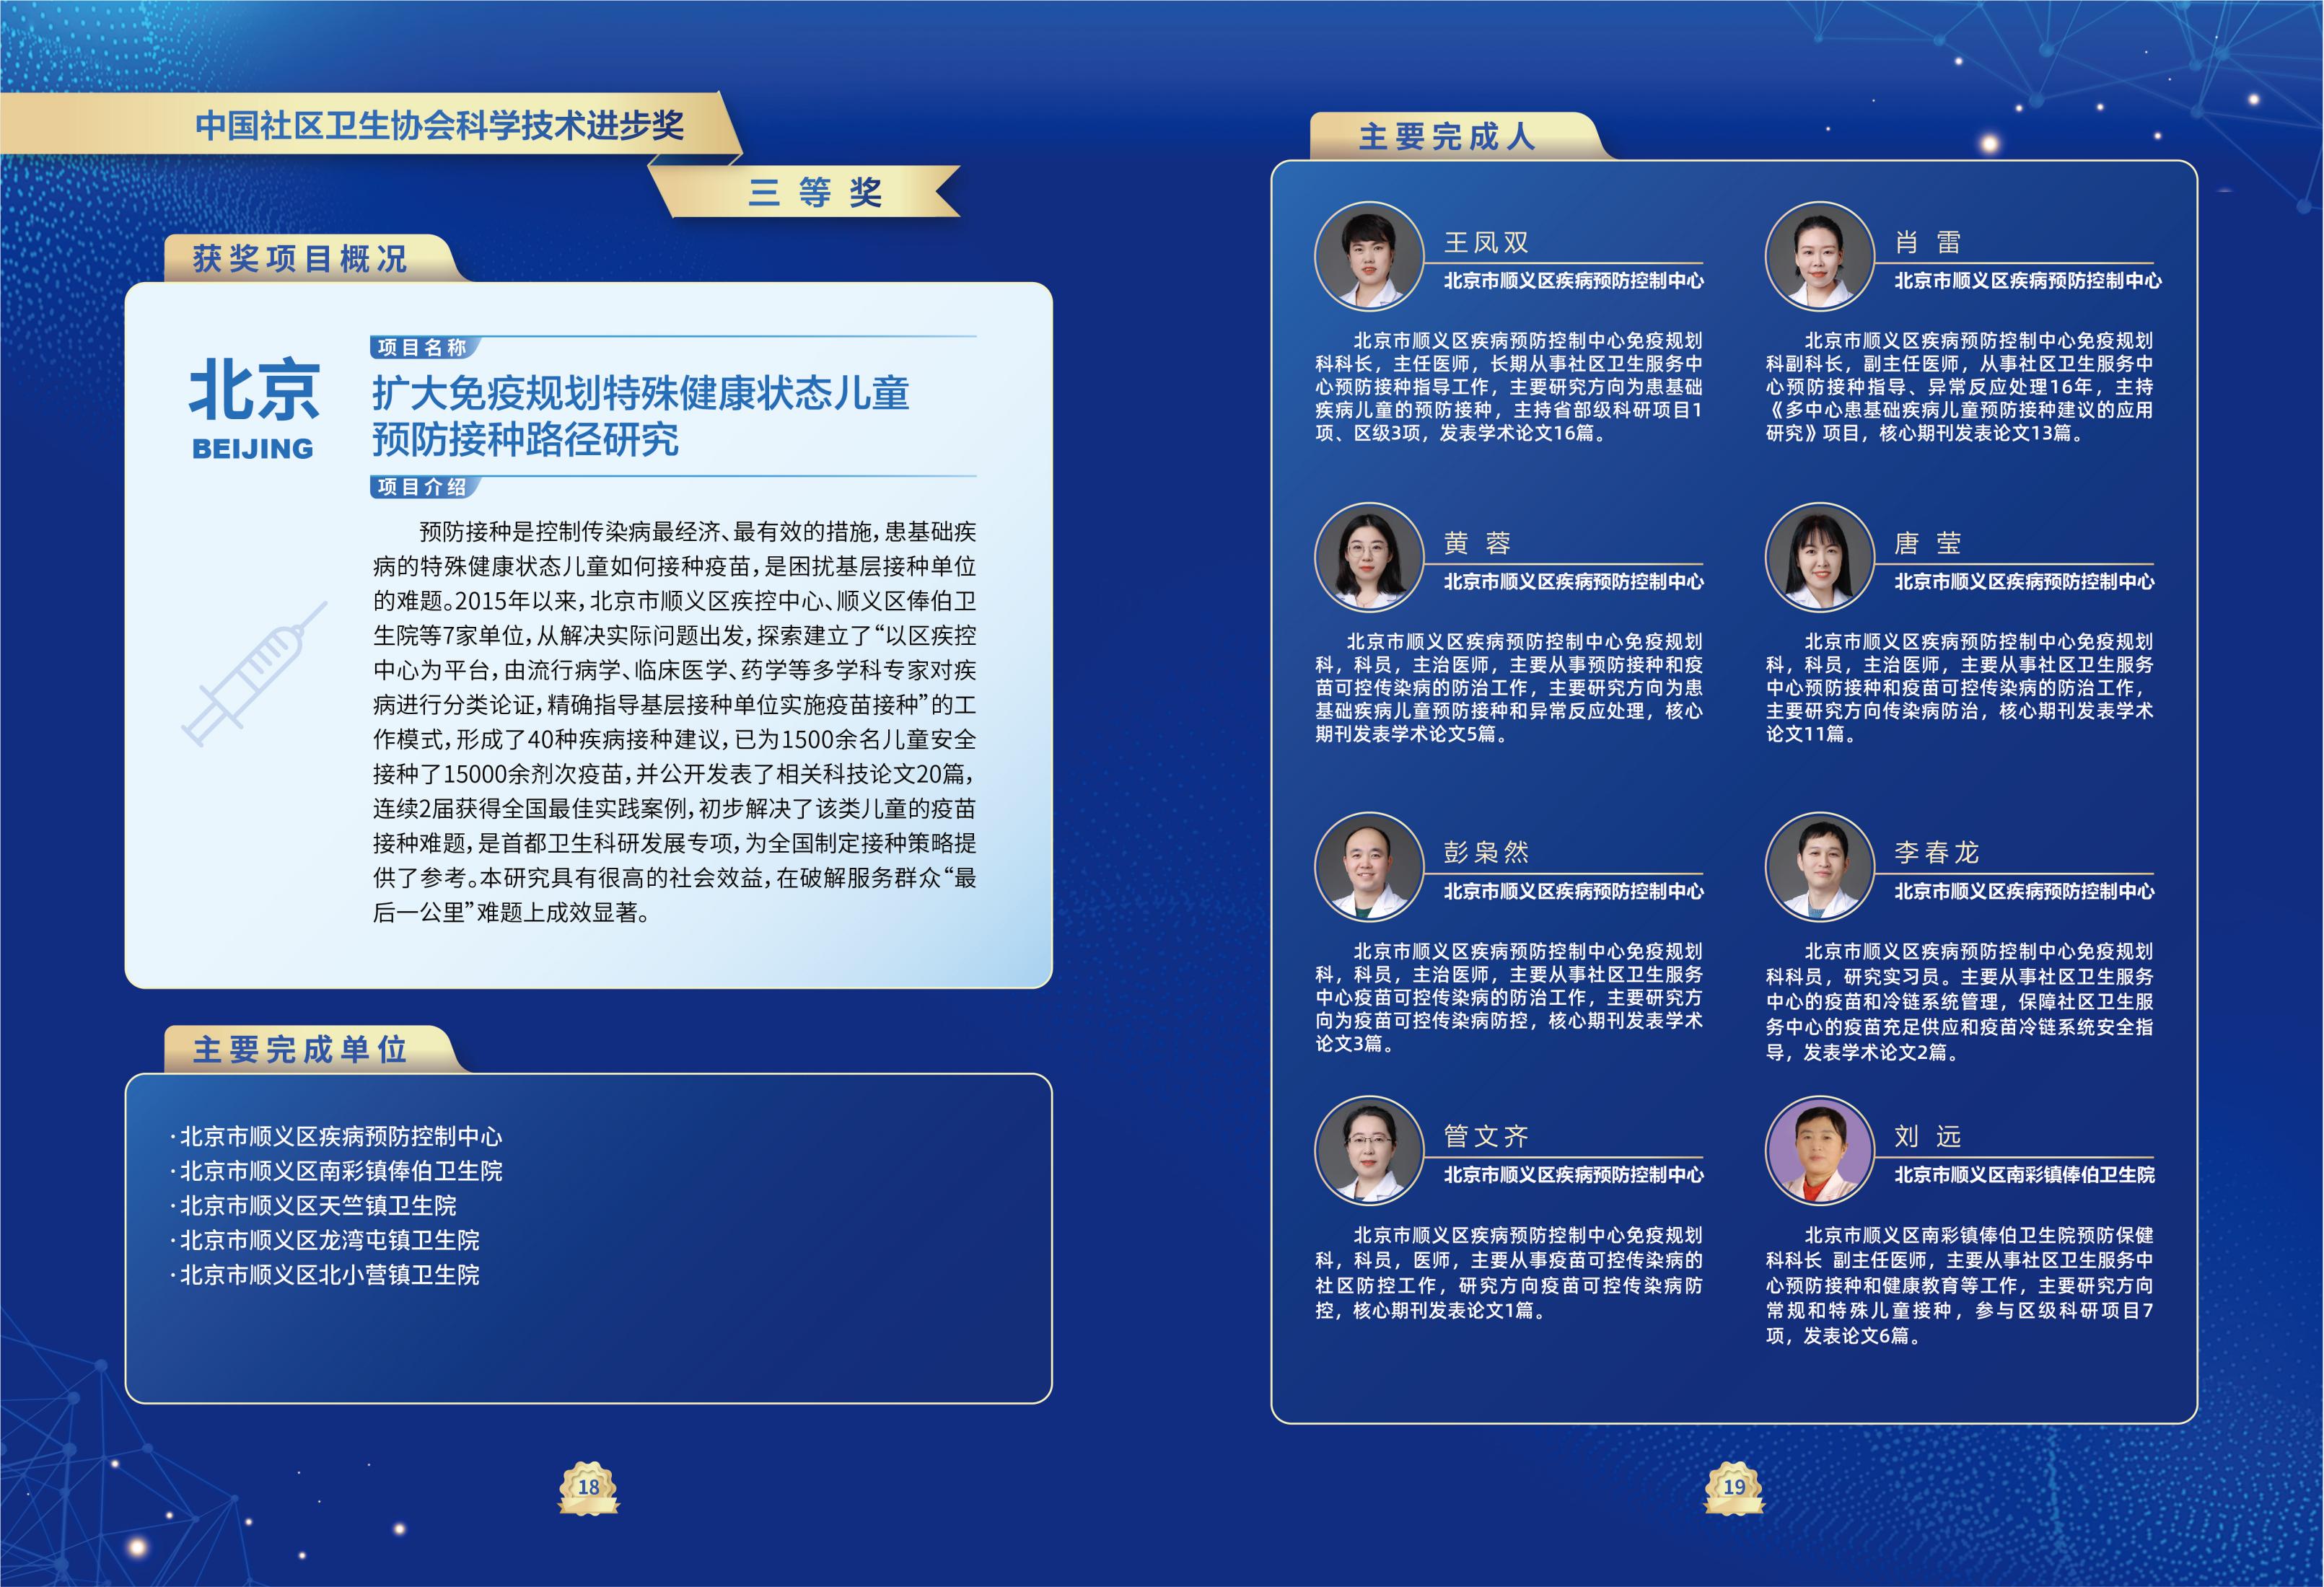 第一届中国社区卫生协会科学技术奖奖励名单_12